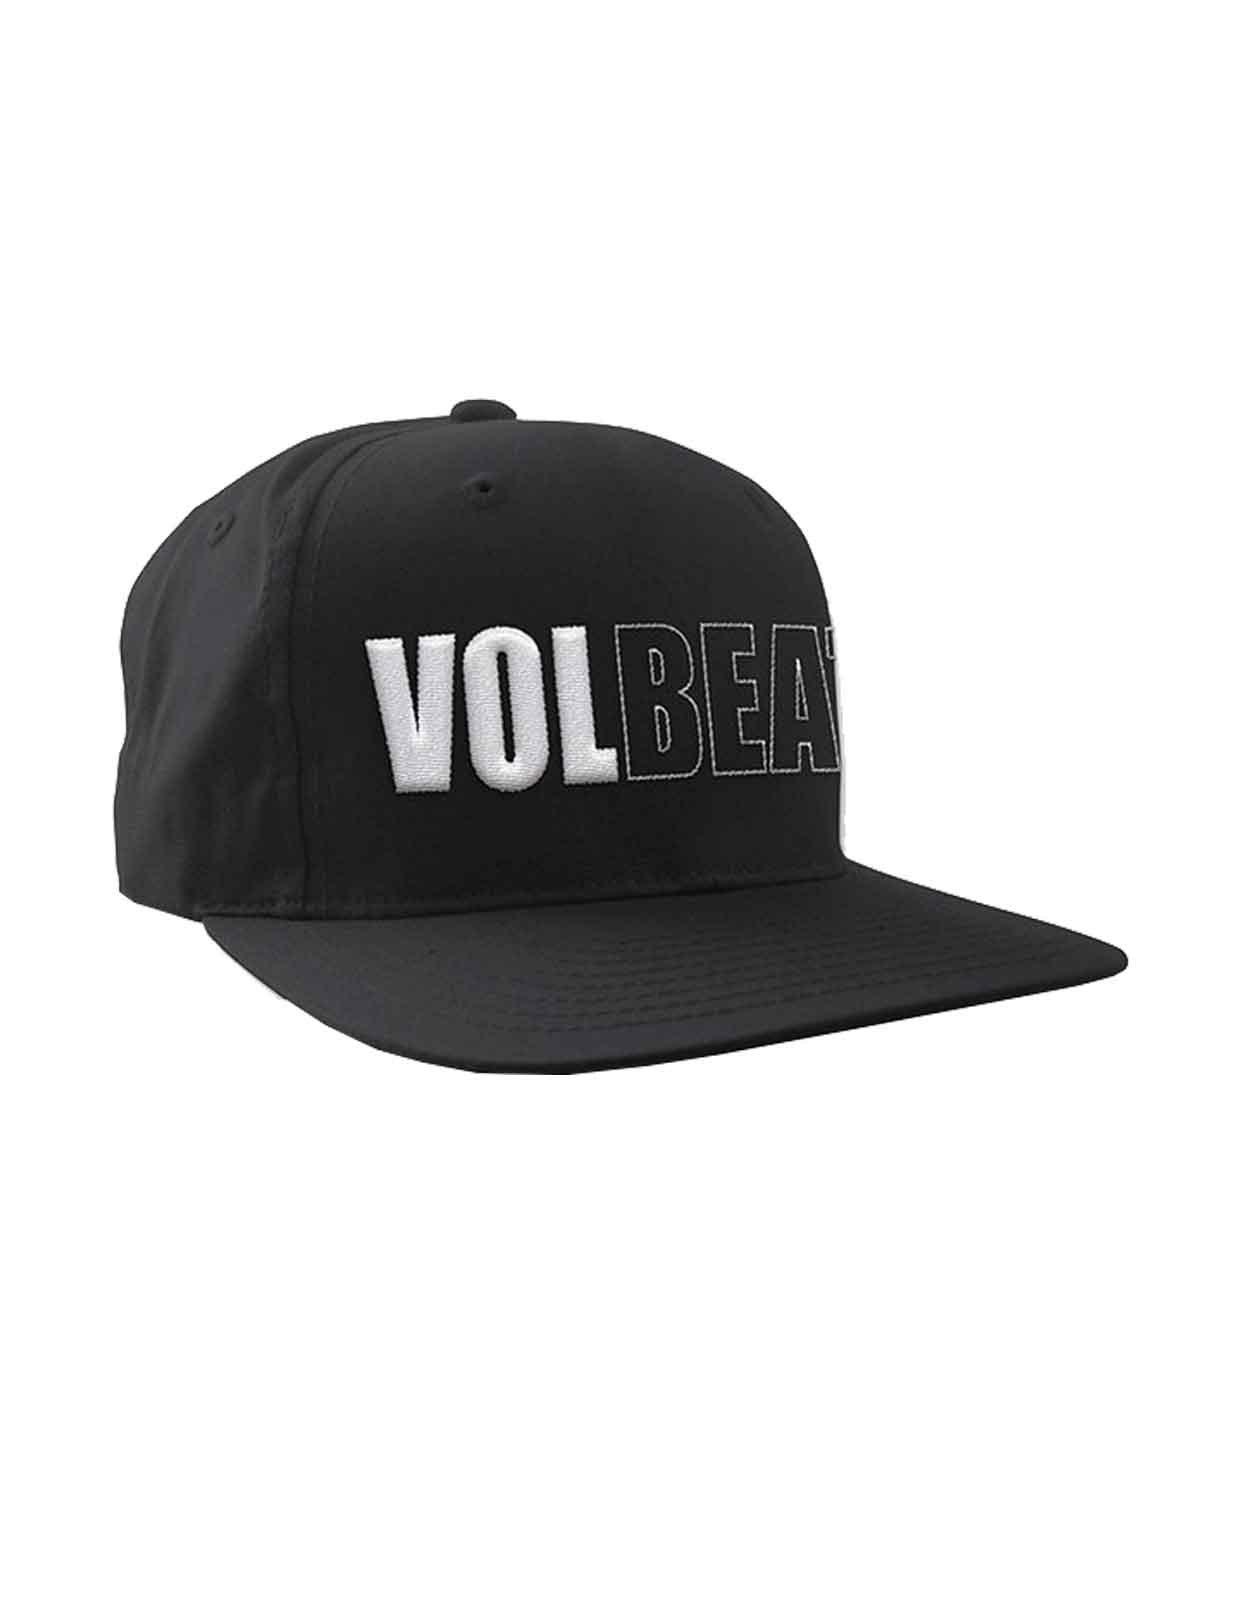 Бейсбольная кепка Snapback с объемным логотипом Band Volbeat, черный бейсболка snapback с тонким логотипом shady eminem черный